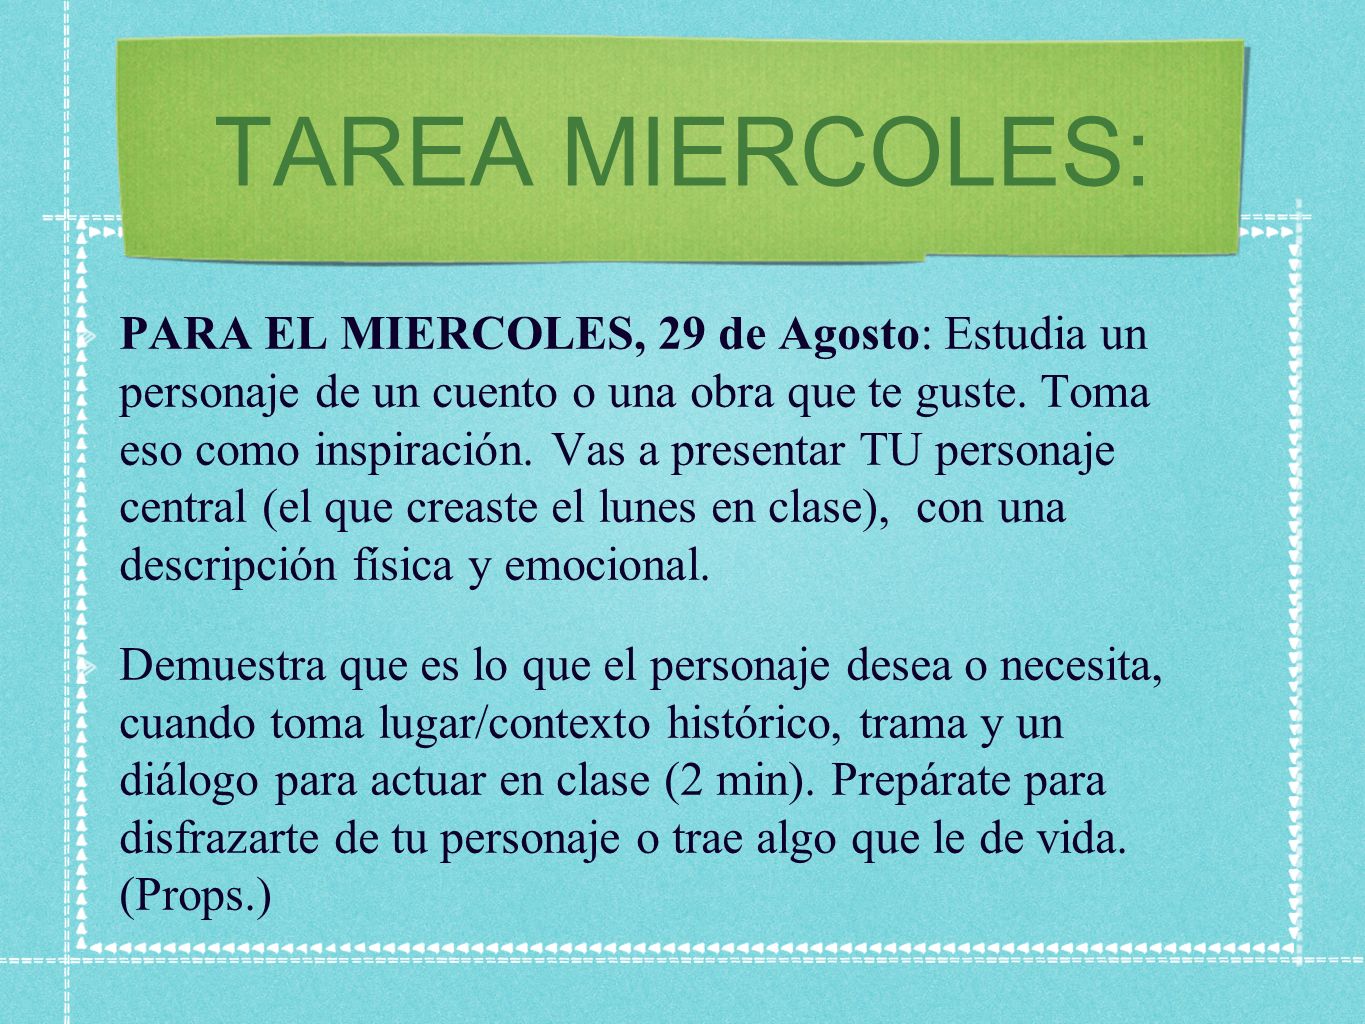 TAREA MIERCOLES: PARA EL MIERCOLES, 29 de Agosto: Estudia un personaje de un cuento o una obra que te guste.